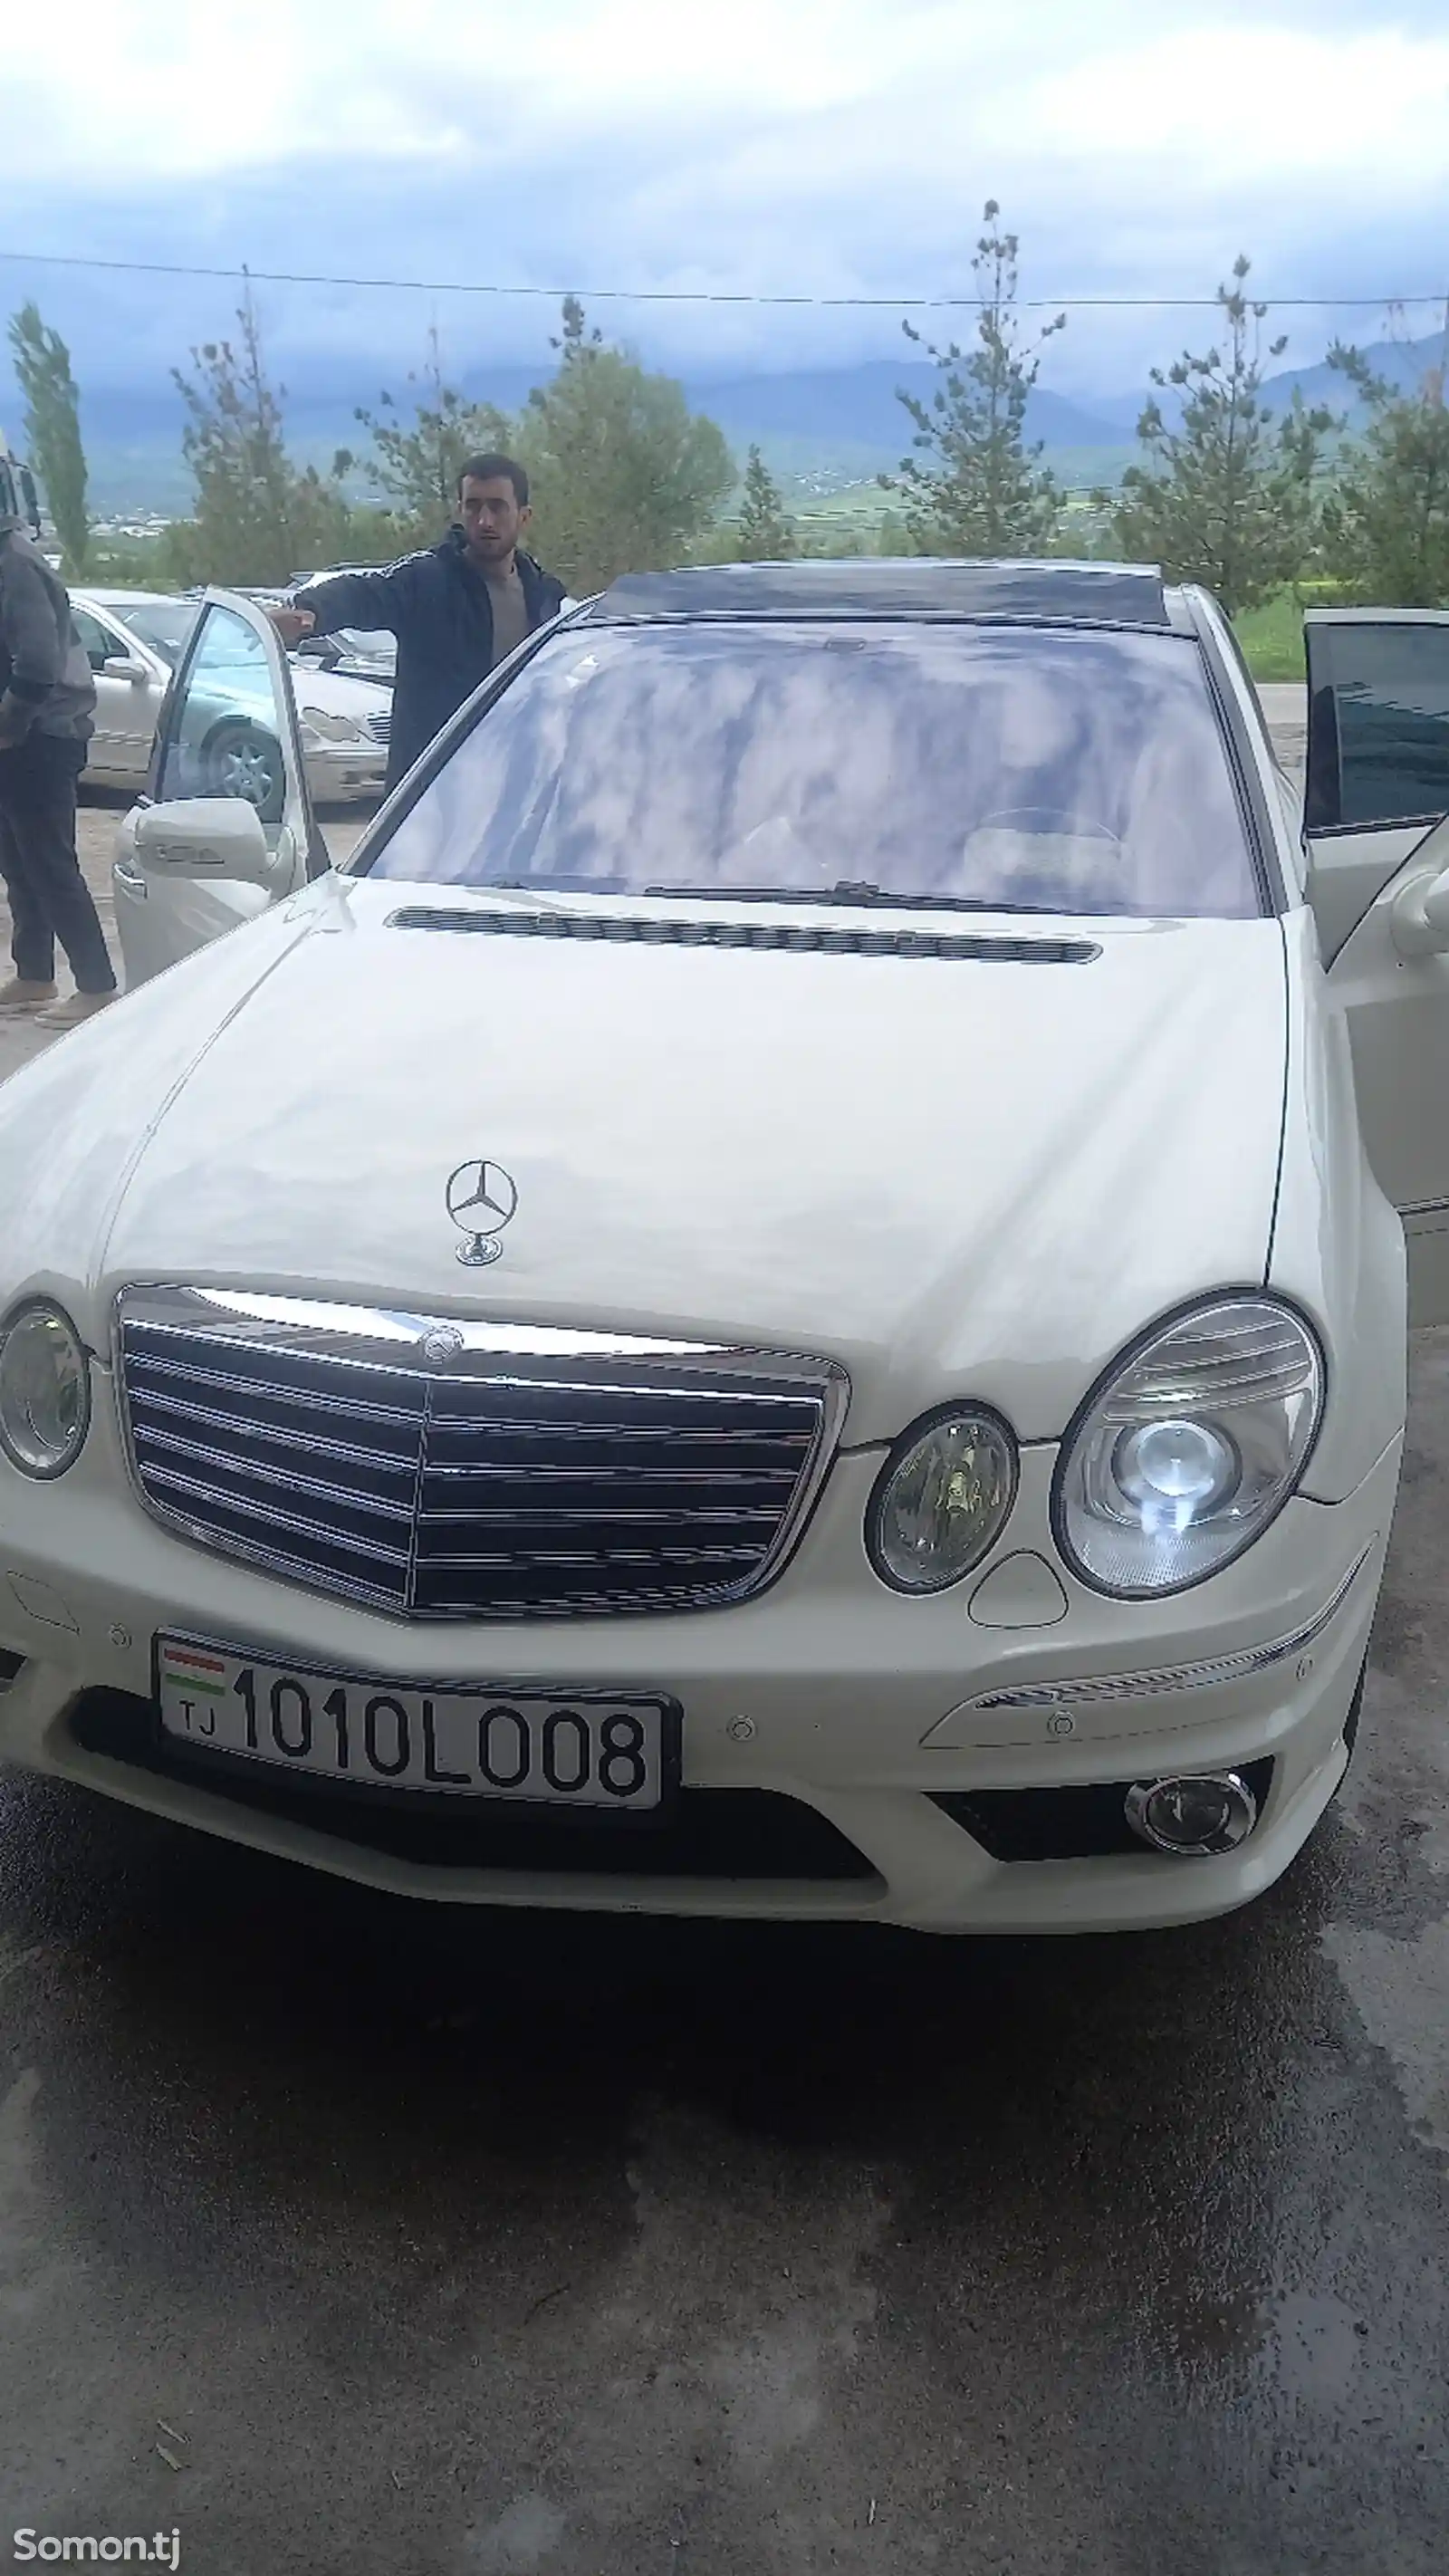 Mercedes-Benz E class, 2008-2